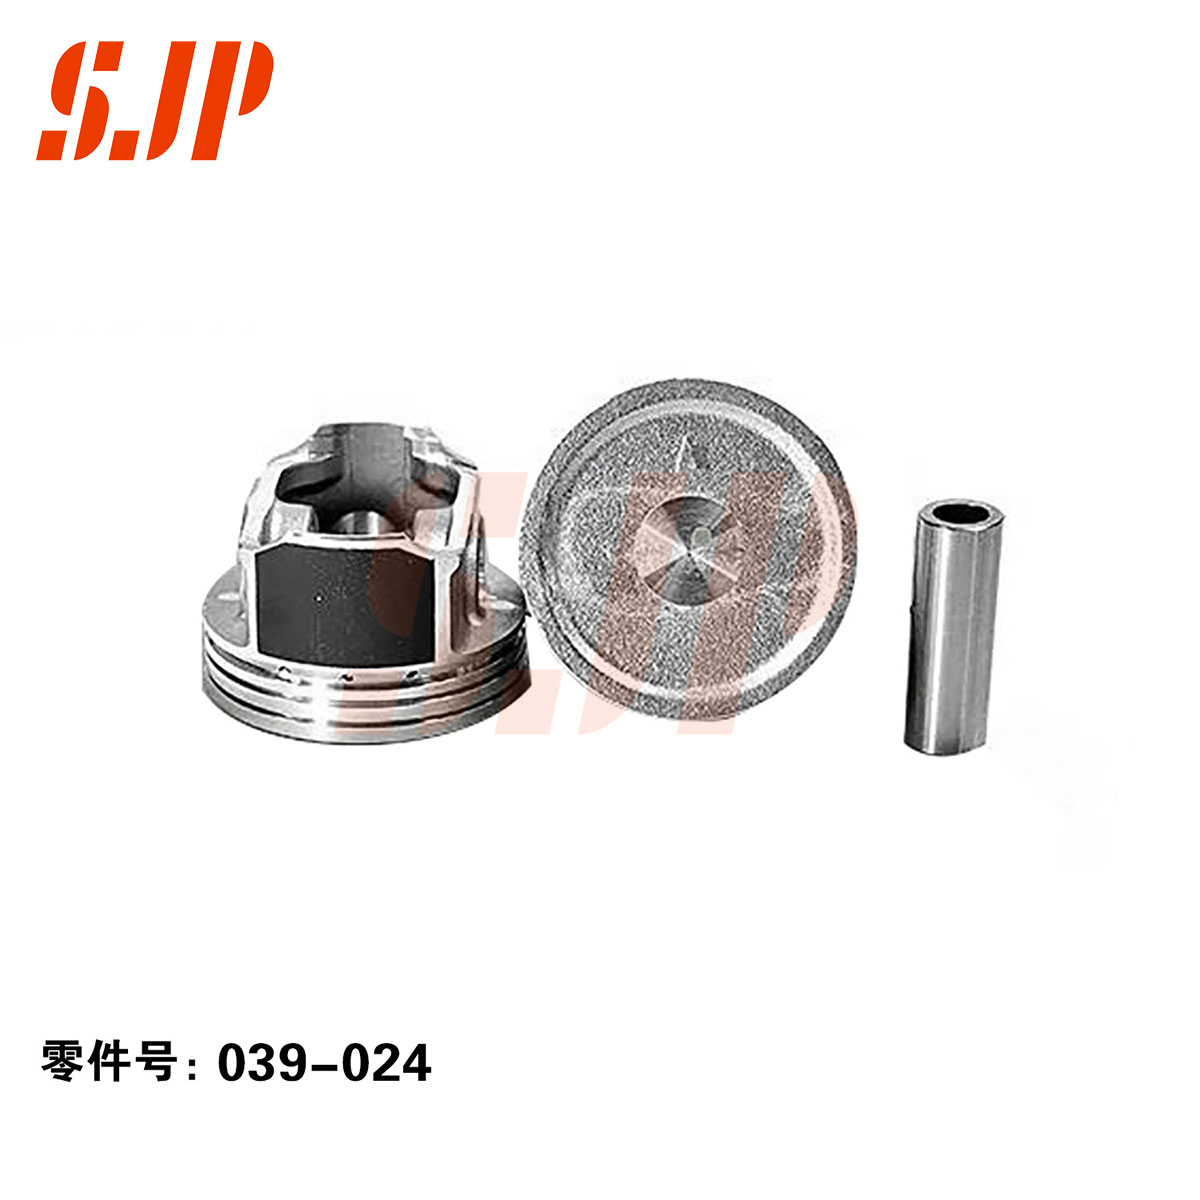 SJ-039-024 Piston And Pin For Liuji 469